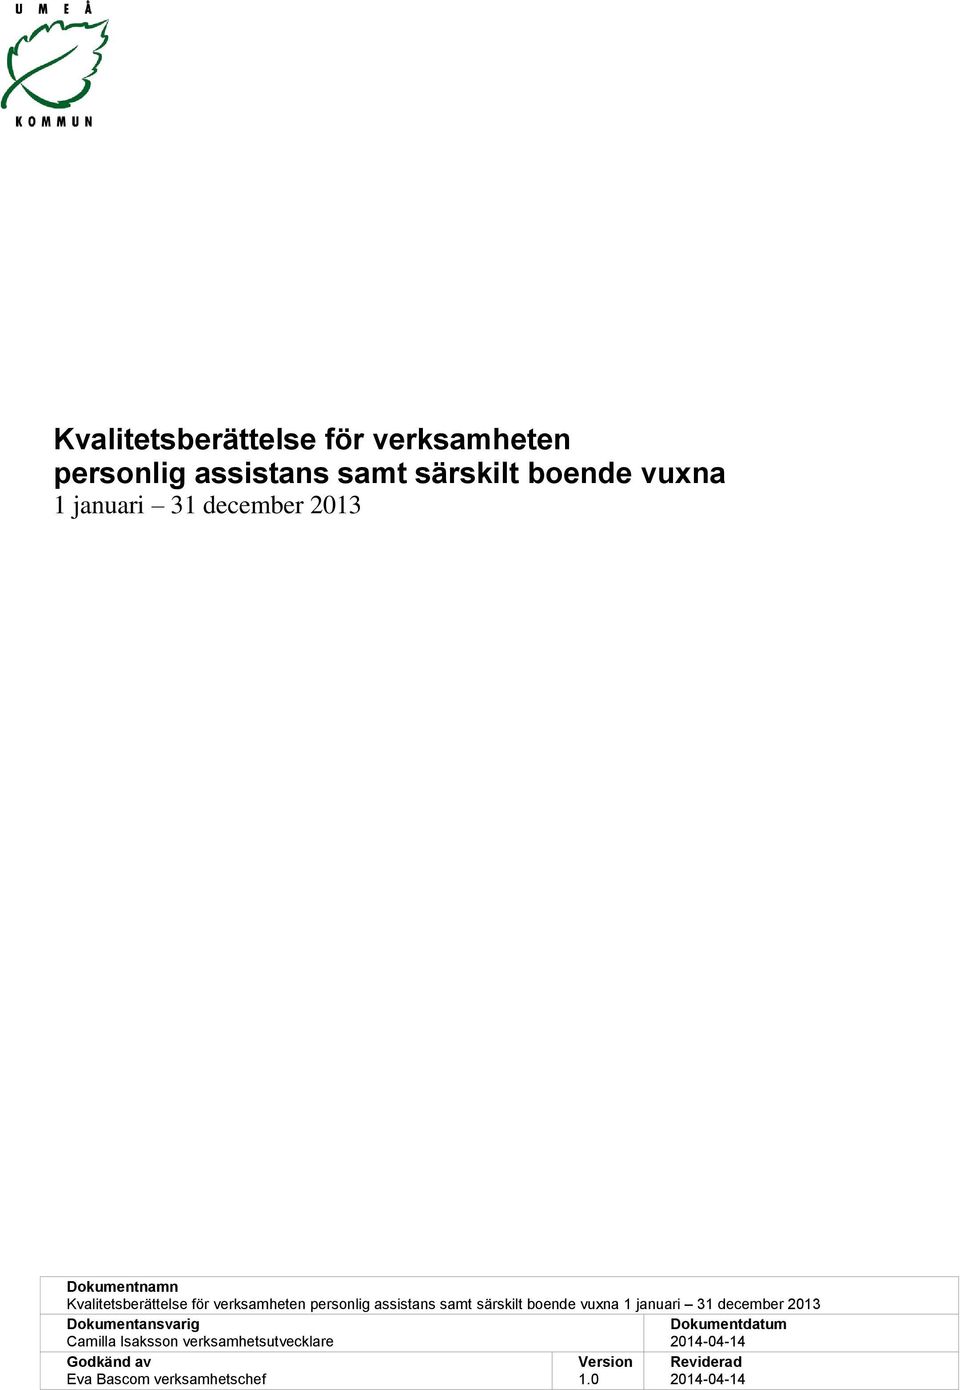 verksamhetsutvecklare Dokumentdatum 2014-04-14 Godkänd av Eva Bascom verksamhetschef Version 1.